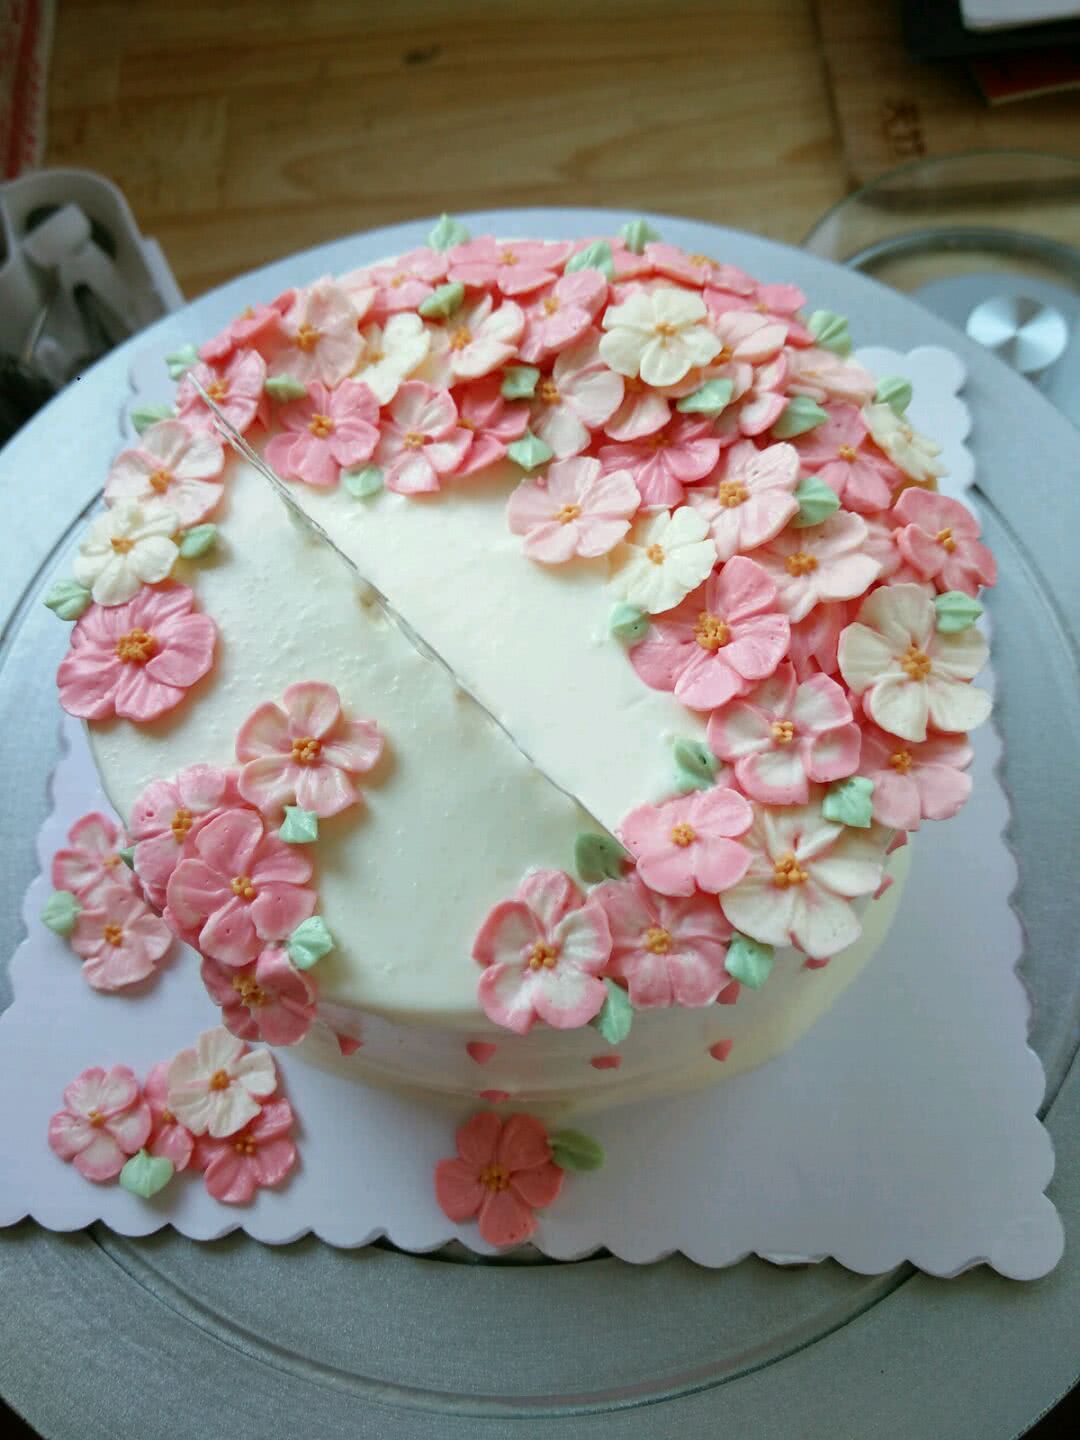 裱花蛋糕怎么做_裱花蛋糕的做法_桔子甜品_豆果美食